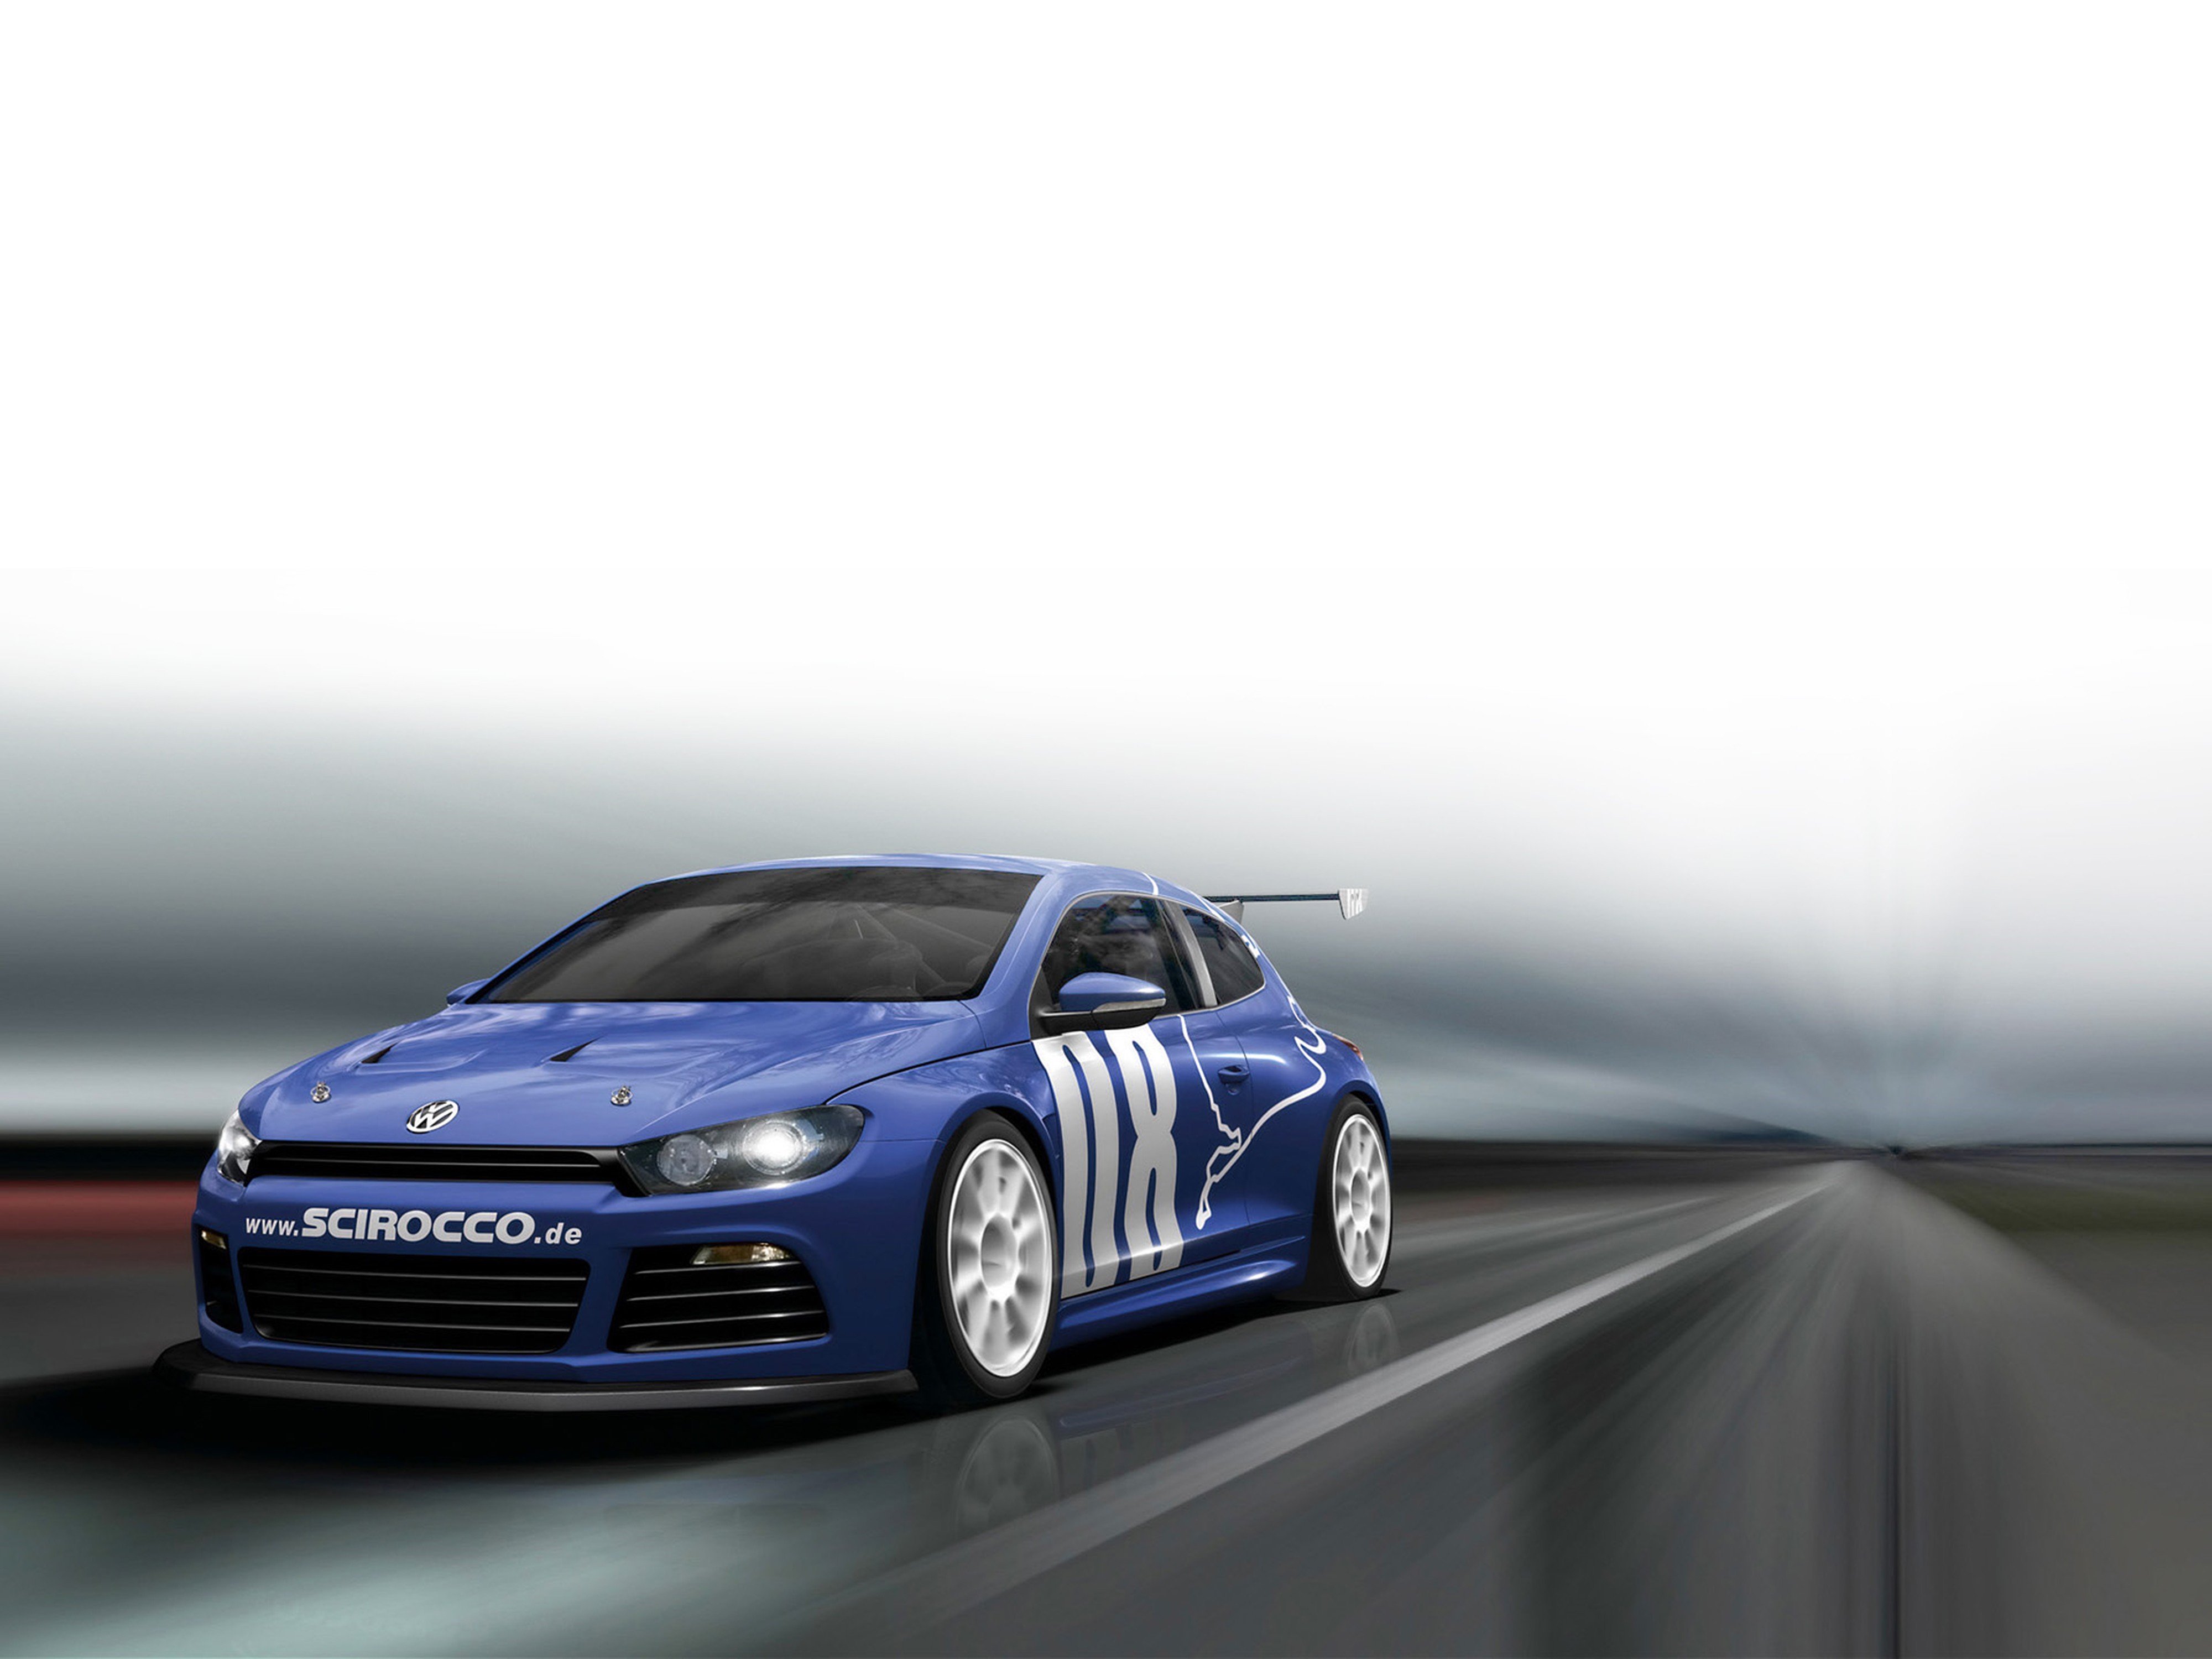 2008, Volkswagen, Scirocco, Gt24, Race, Car, Racing, Blue, 4000x3000 Wallpaper